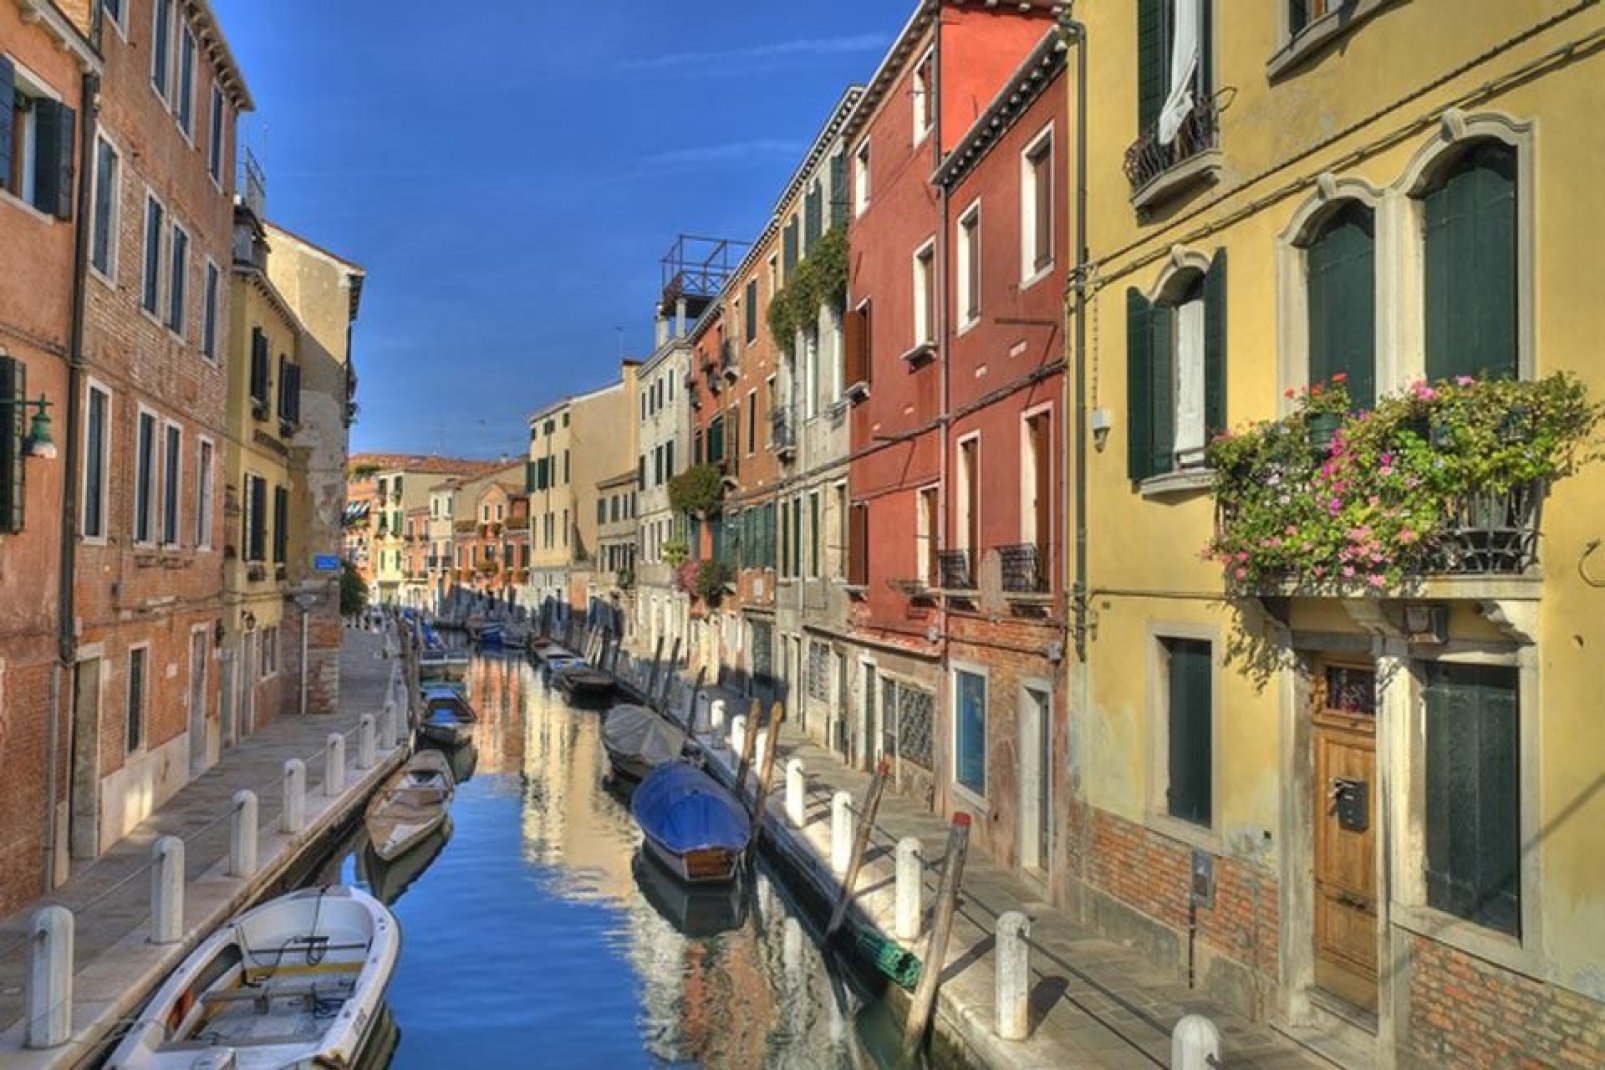 El centro de Venecia se extiende sobre 118 islotes unidos por 354 puentes y divididos por 177 canales que, desde siempre, son las vías de comunicación para los habitantes.